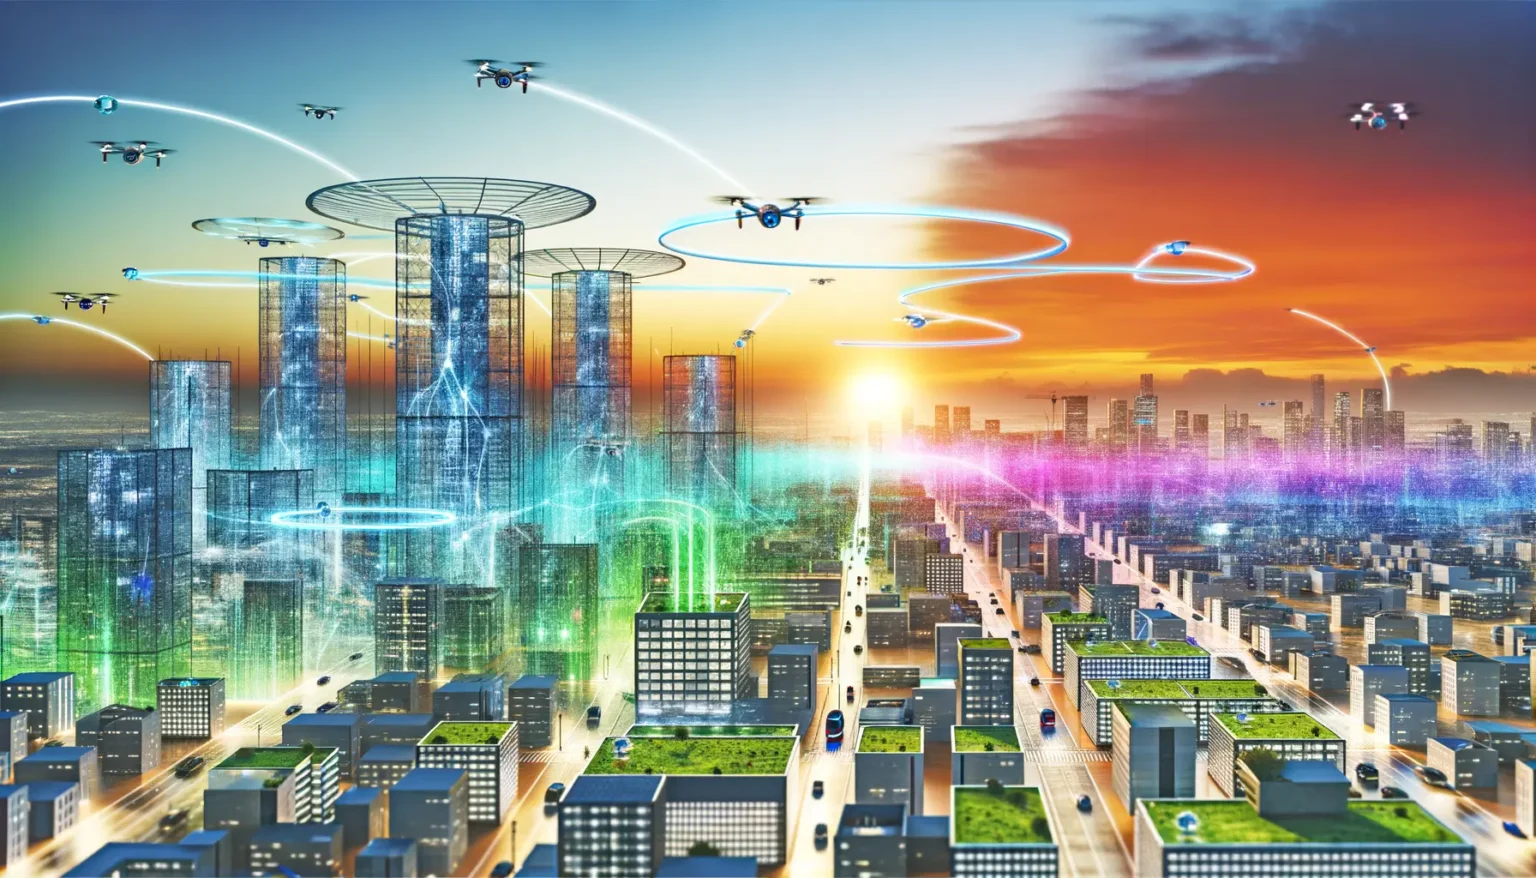 Futuristische Stadtansicht bei Sonnenuntergang mit holographischen Darstellungen von Gebäuden und fliegenden Drohnen, die durch farbige Flugbahnen navigiert werden. Das Bild suggeriert Hochtechnologie und fortschrittliche Stadtplanung in einer Smart City.